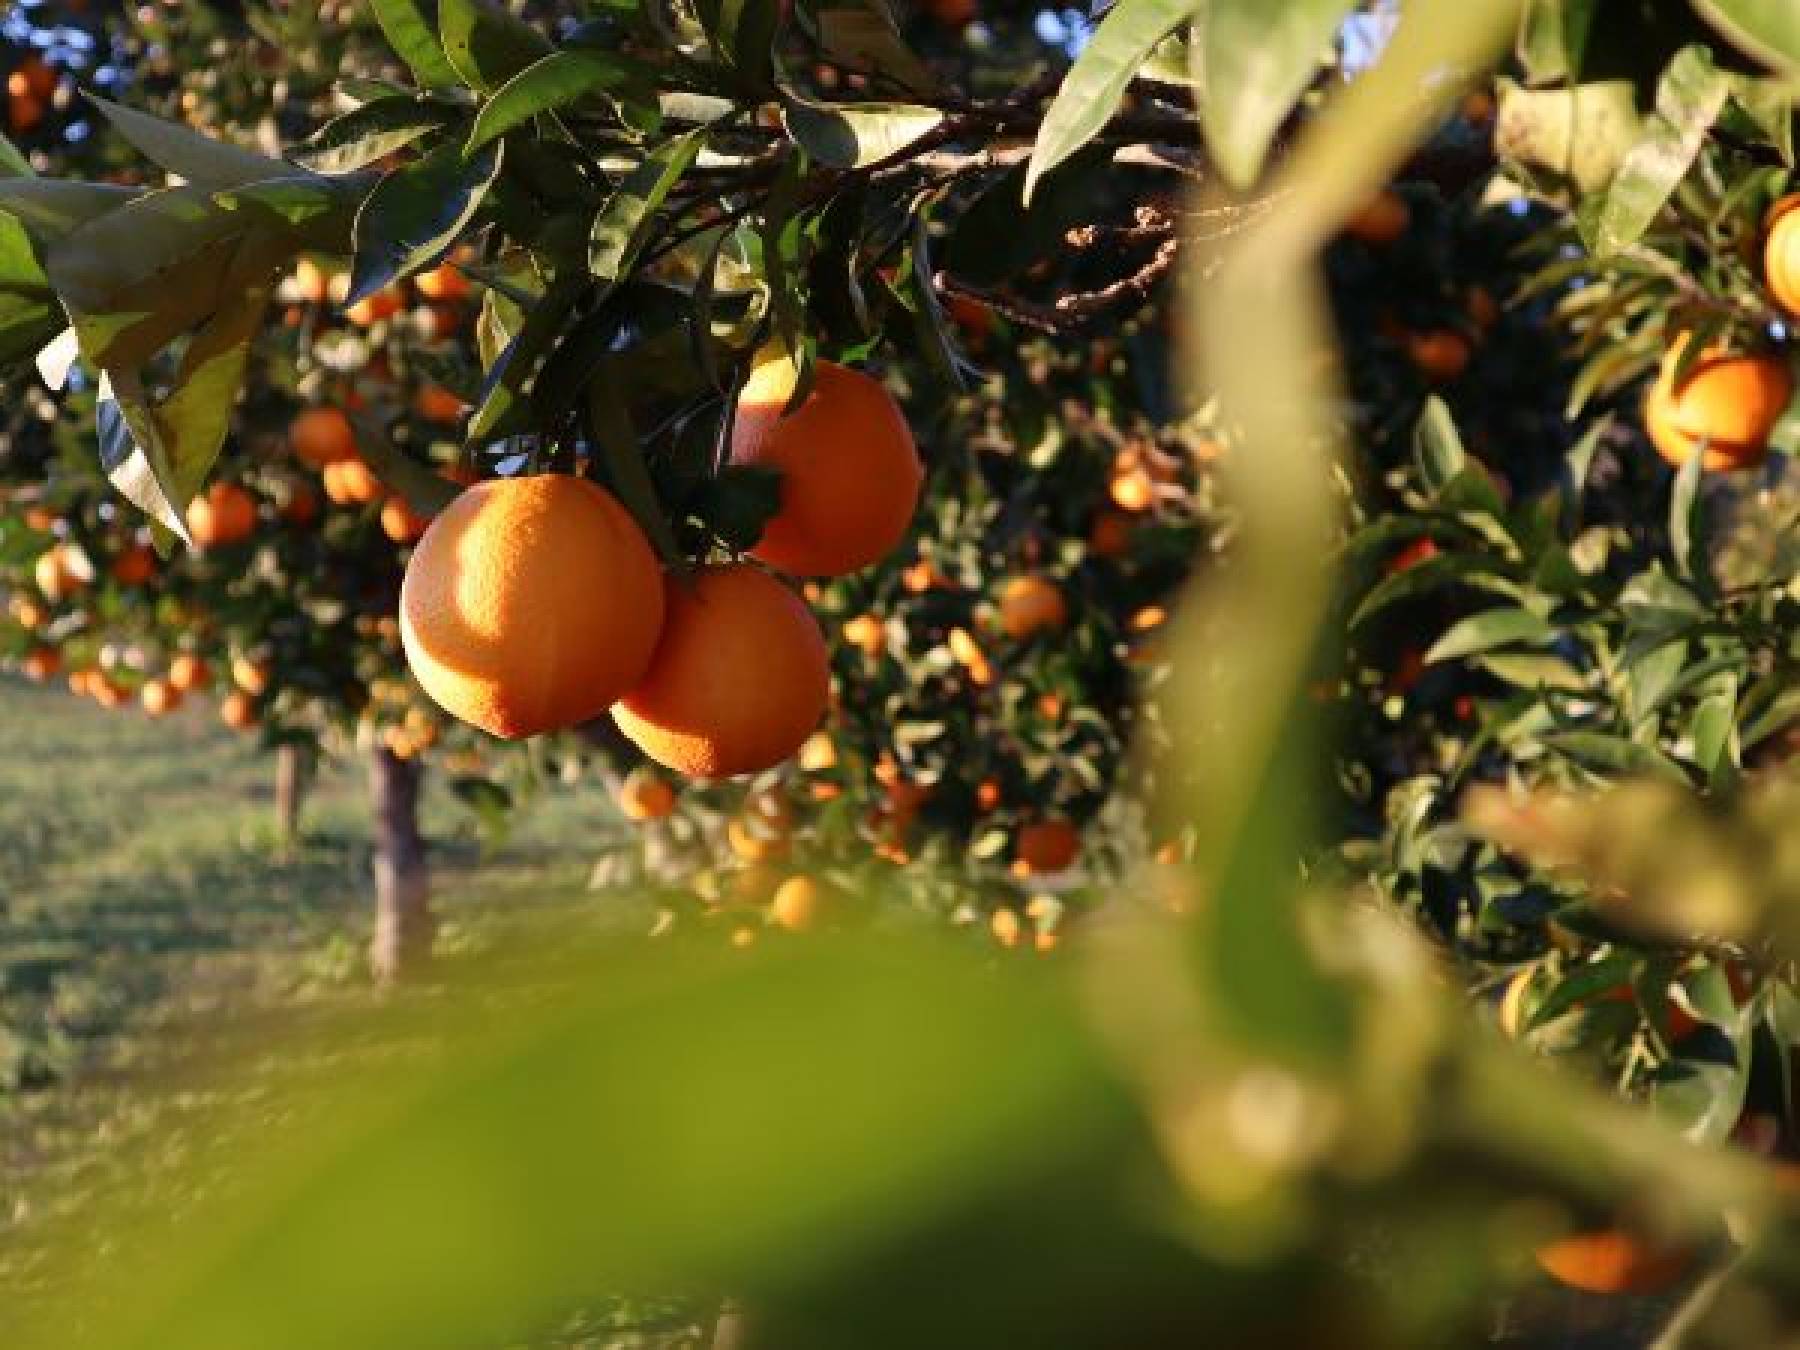 Jakie są najważniejsze praktyki i zabiegi związane z uprawą owoców w sadzie?